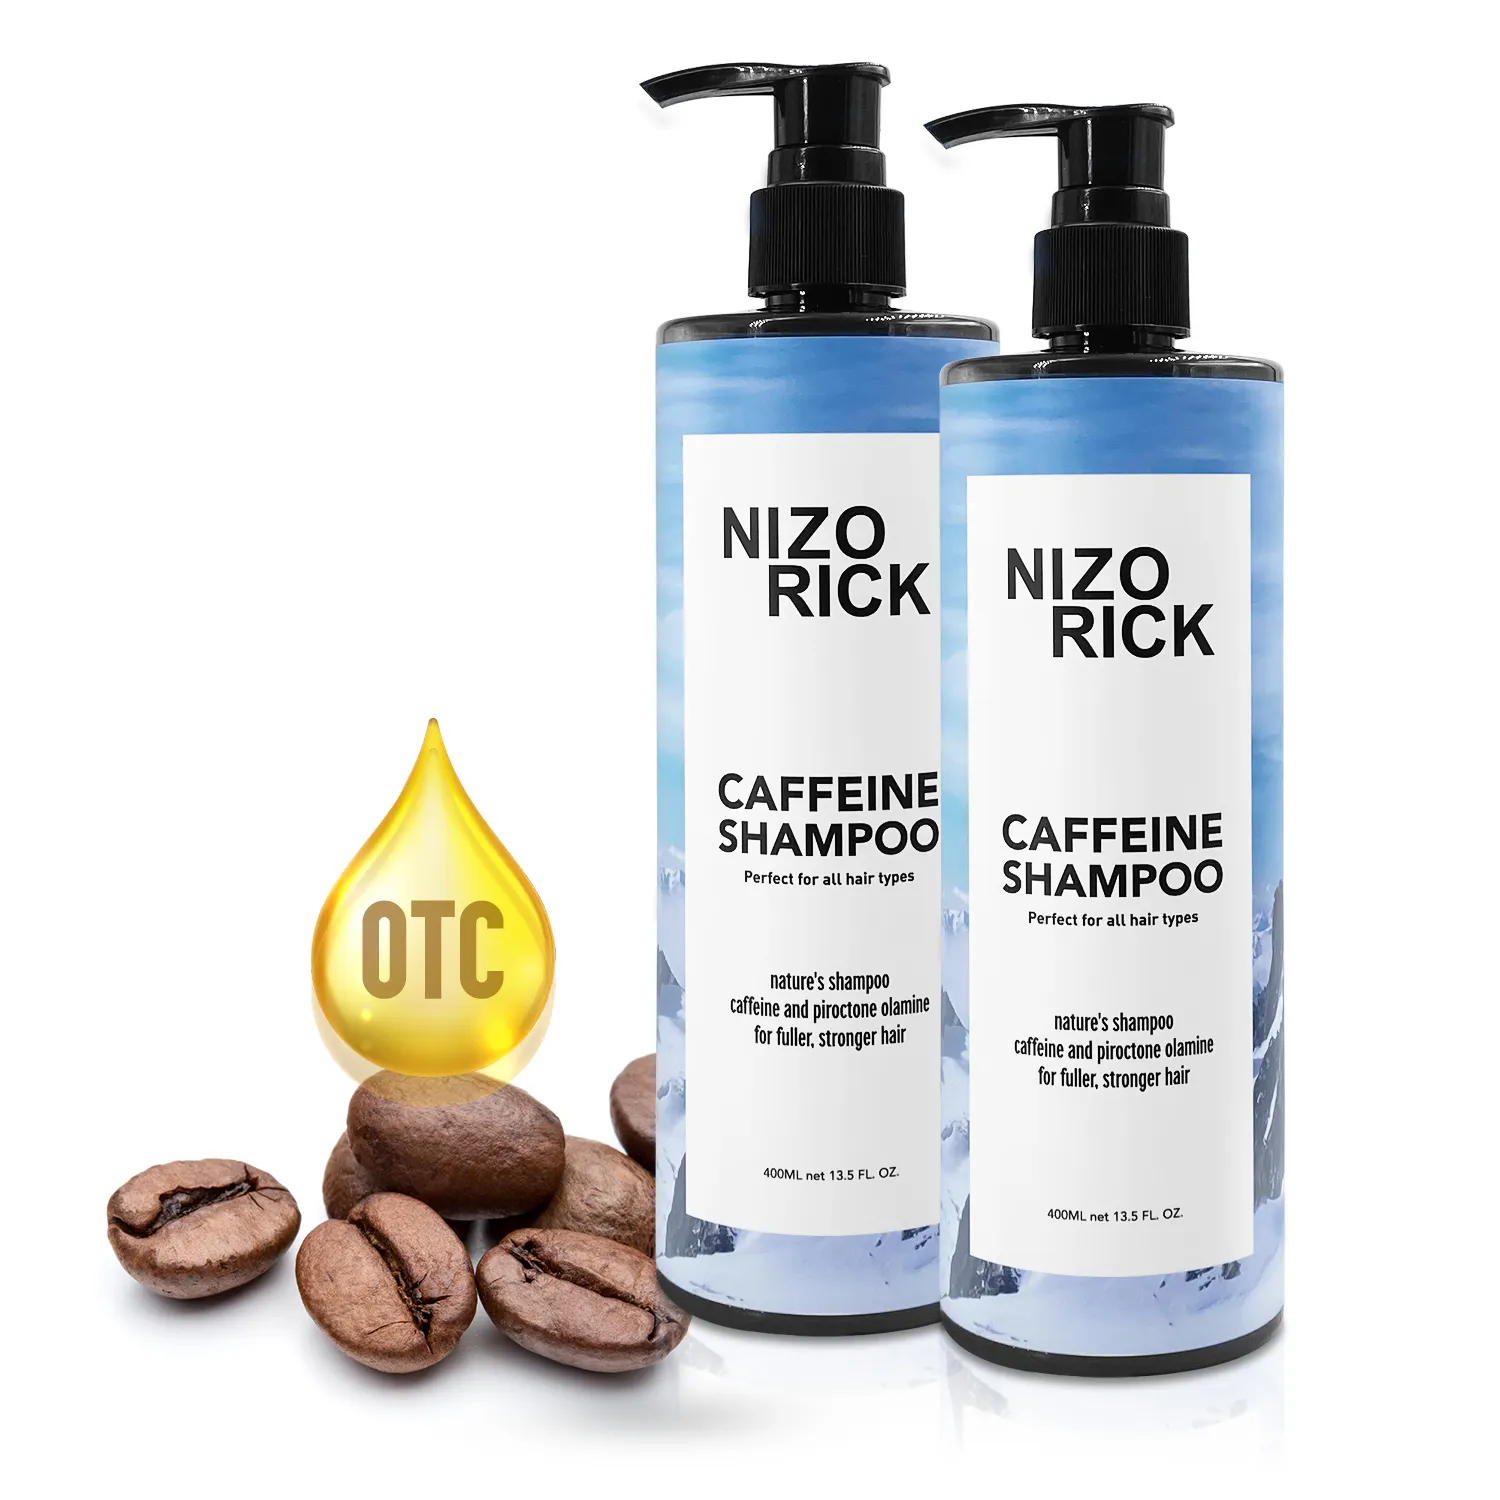 Шампунь для волос NIZO RICK, органический питательный чистый шампунь с кофеином, профессиональный шампунь для ухода за головой и плечами